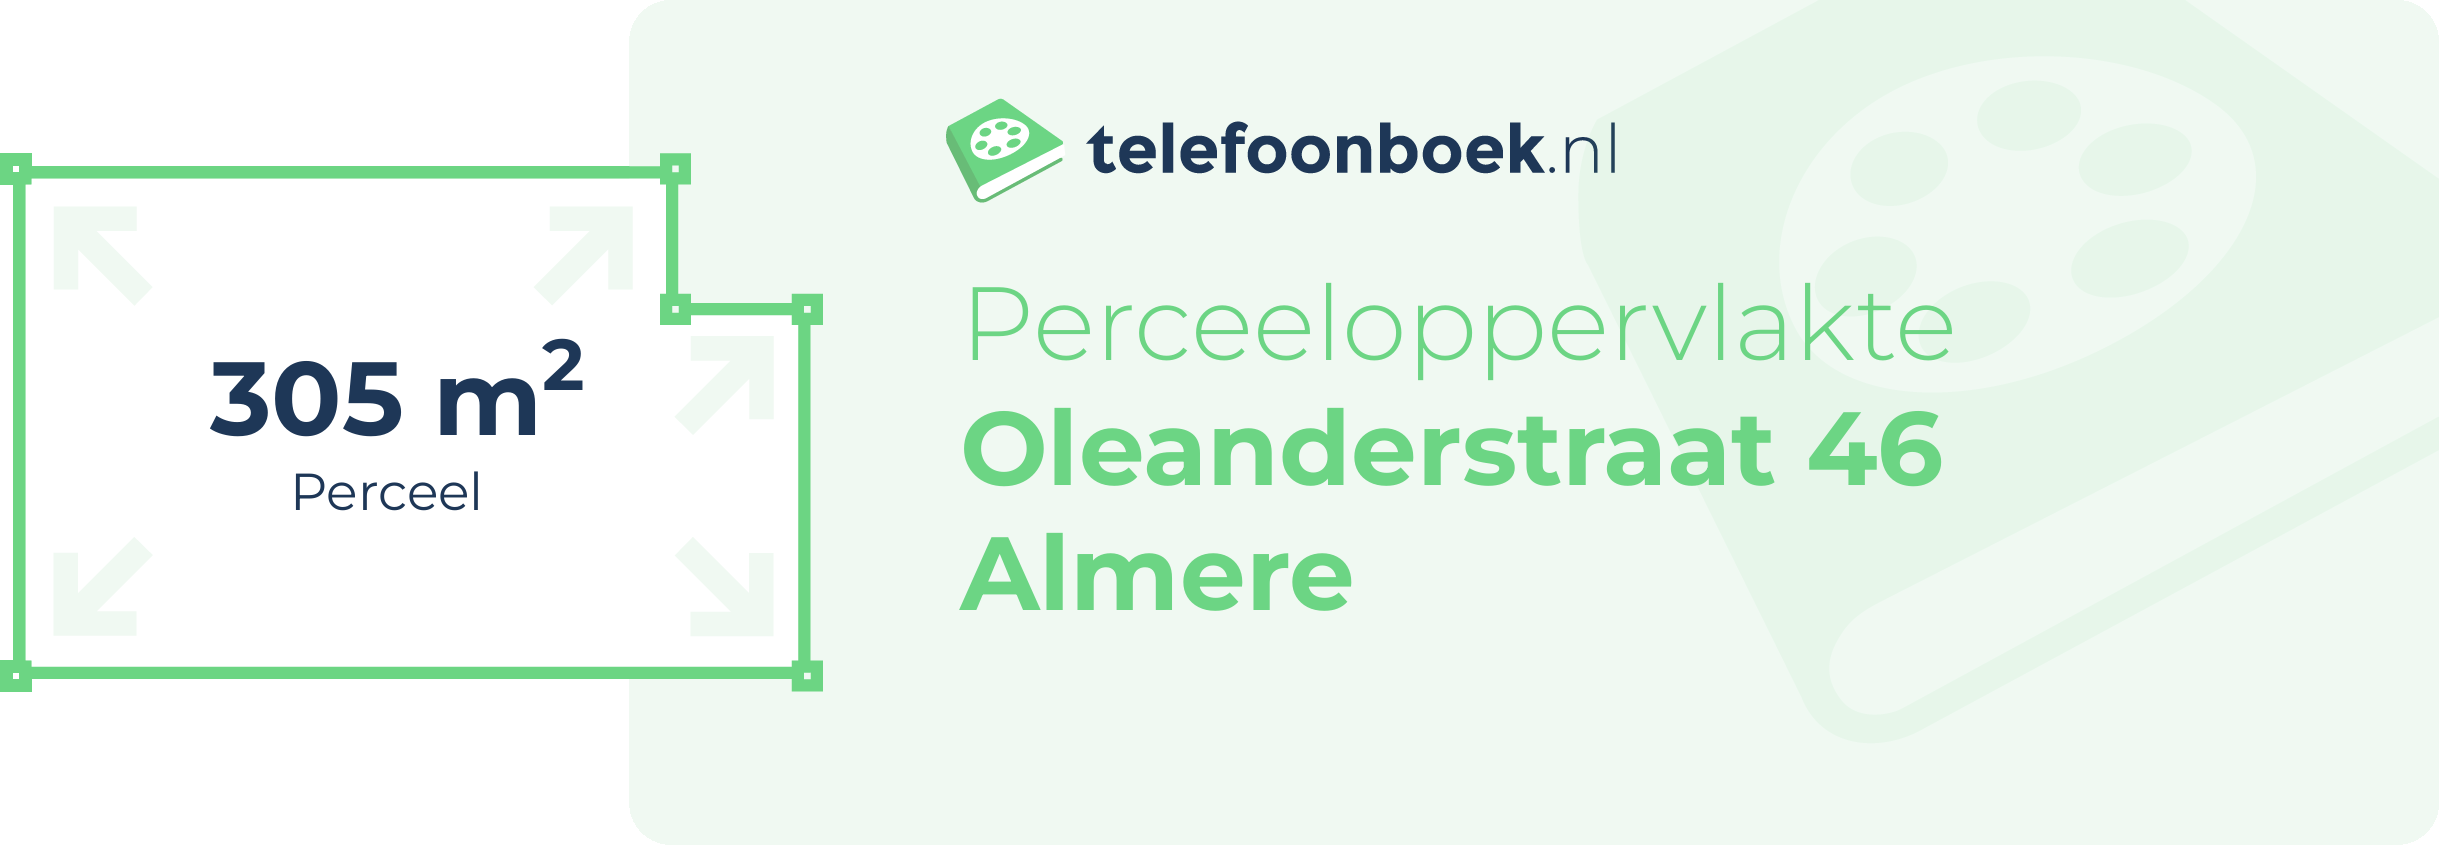 Perceeloppervlakte Oleanderstraat 46 Almere